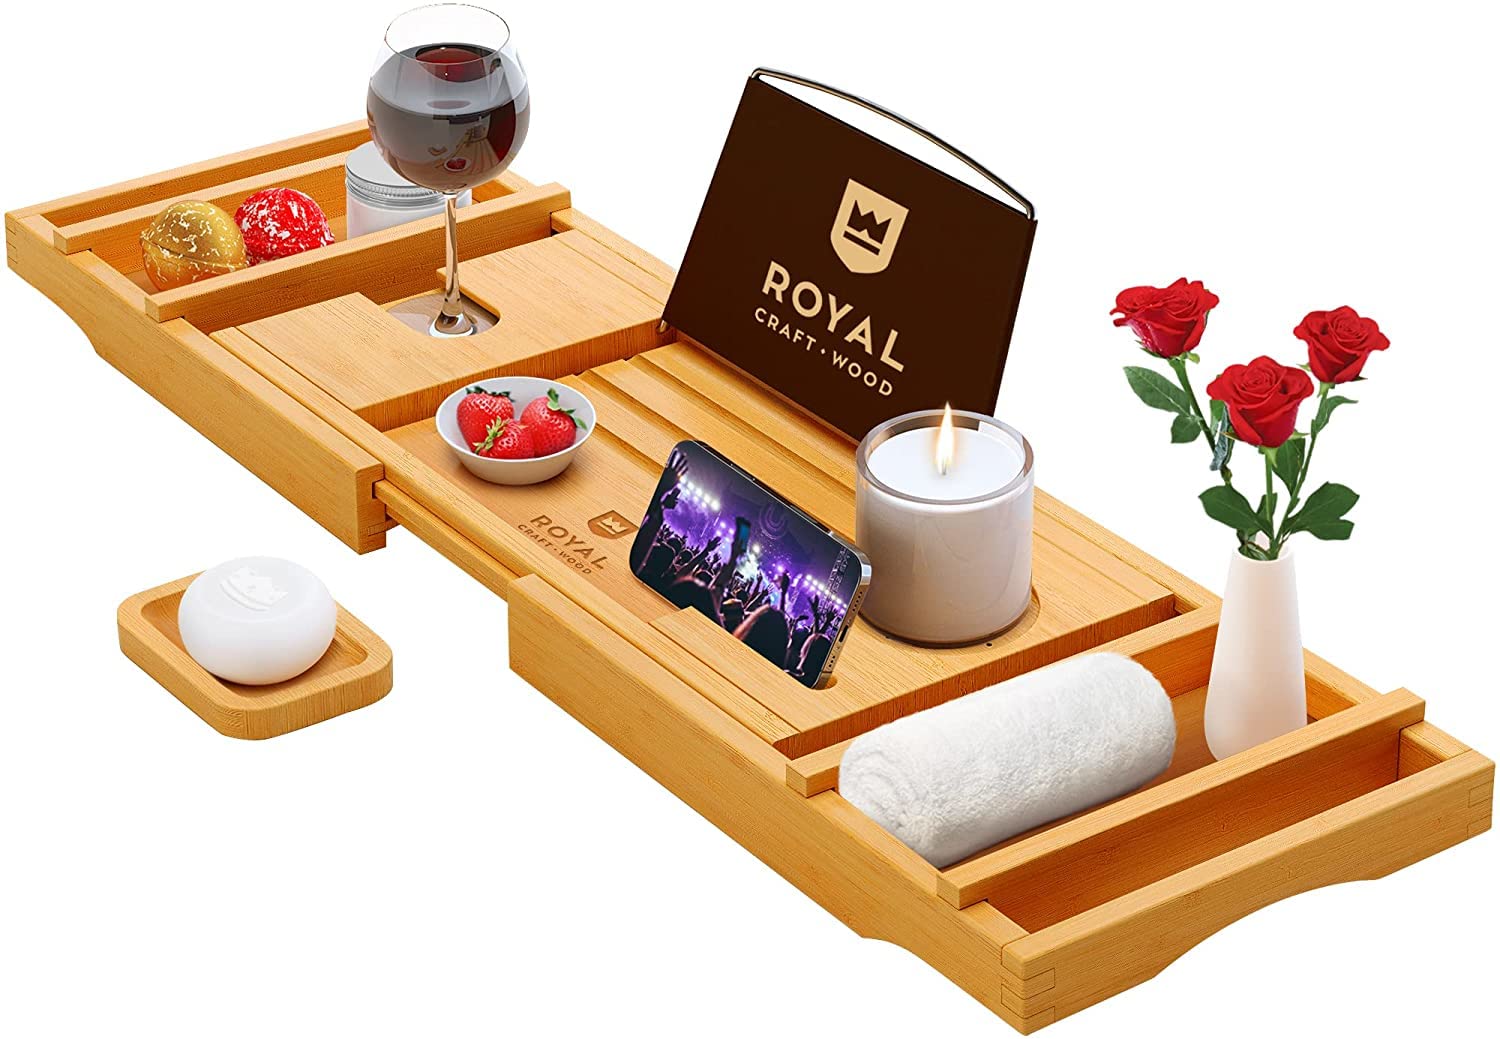 Royal Craft Wood Luxury Bathtub Caddy Natural Bamboo Bath Tub Tray with 1 Free 